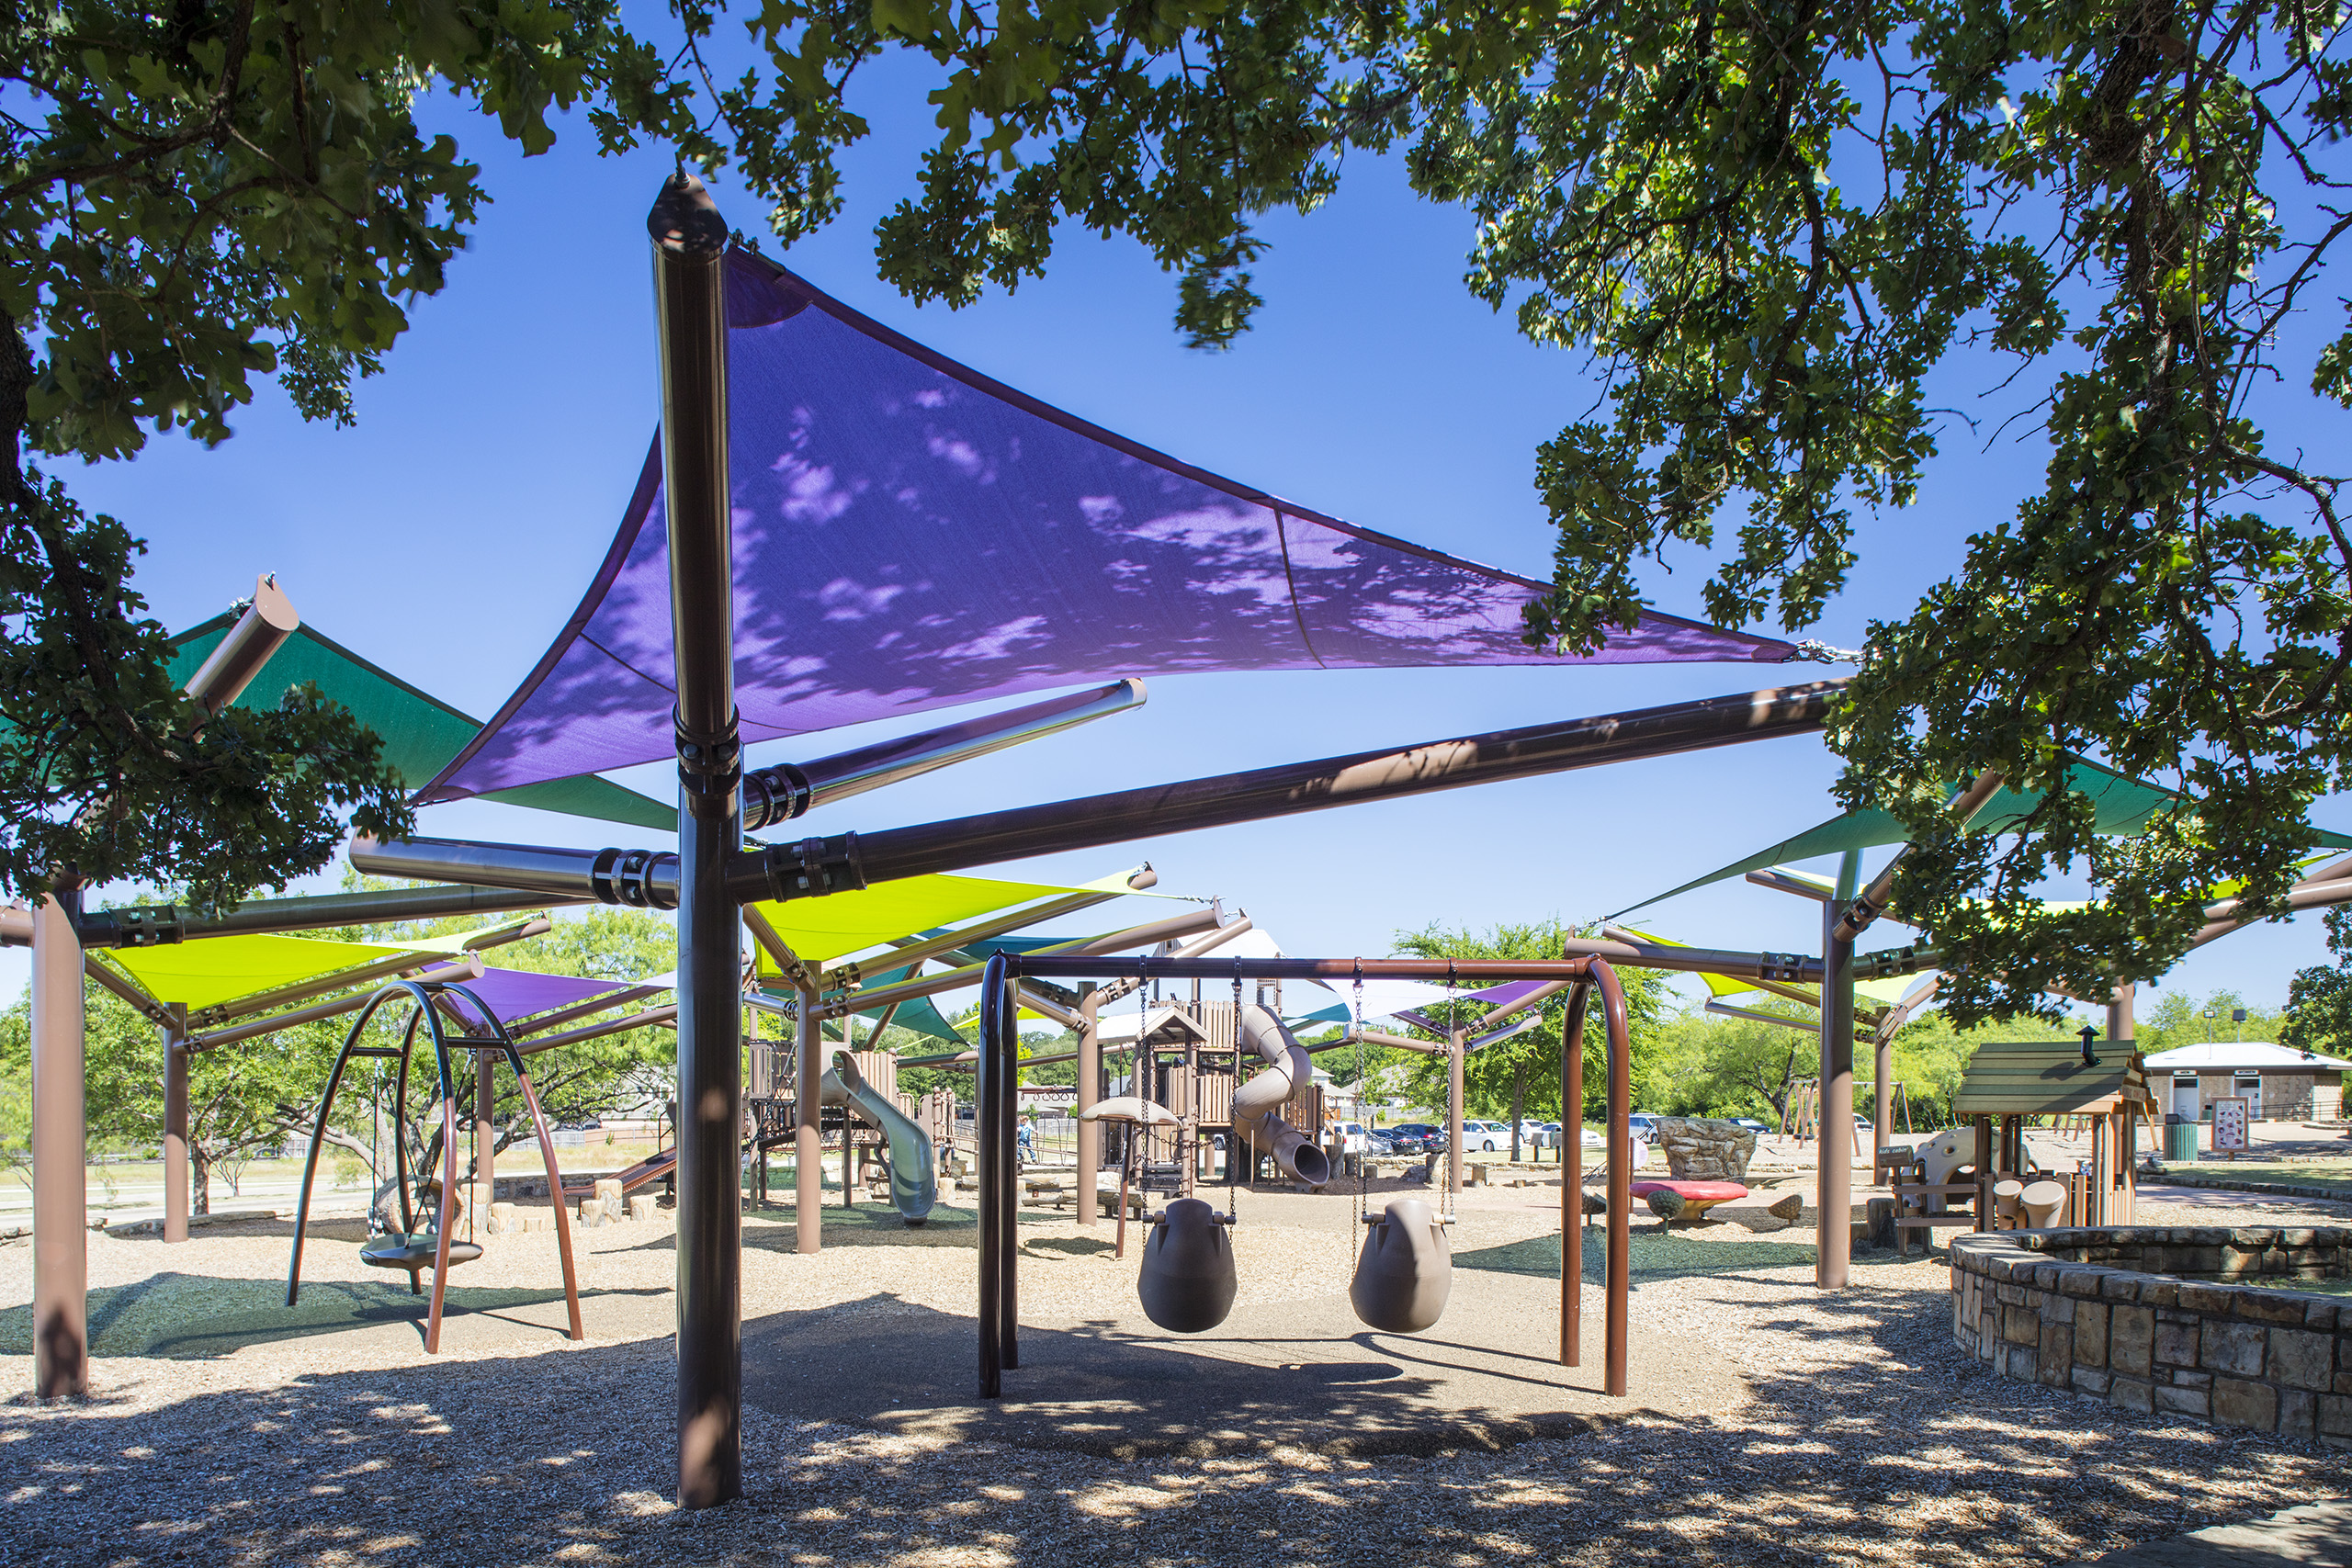 purple shade covering playground equipment